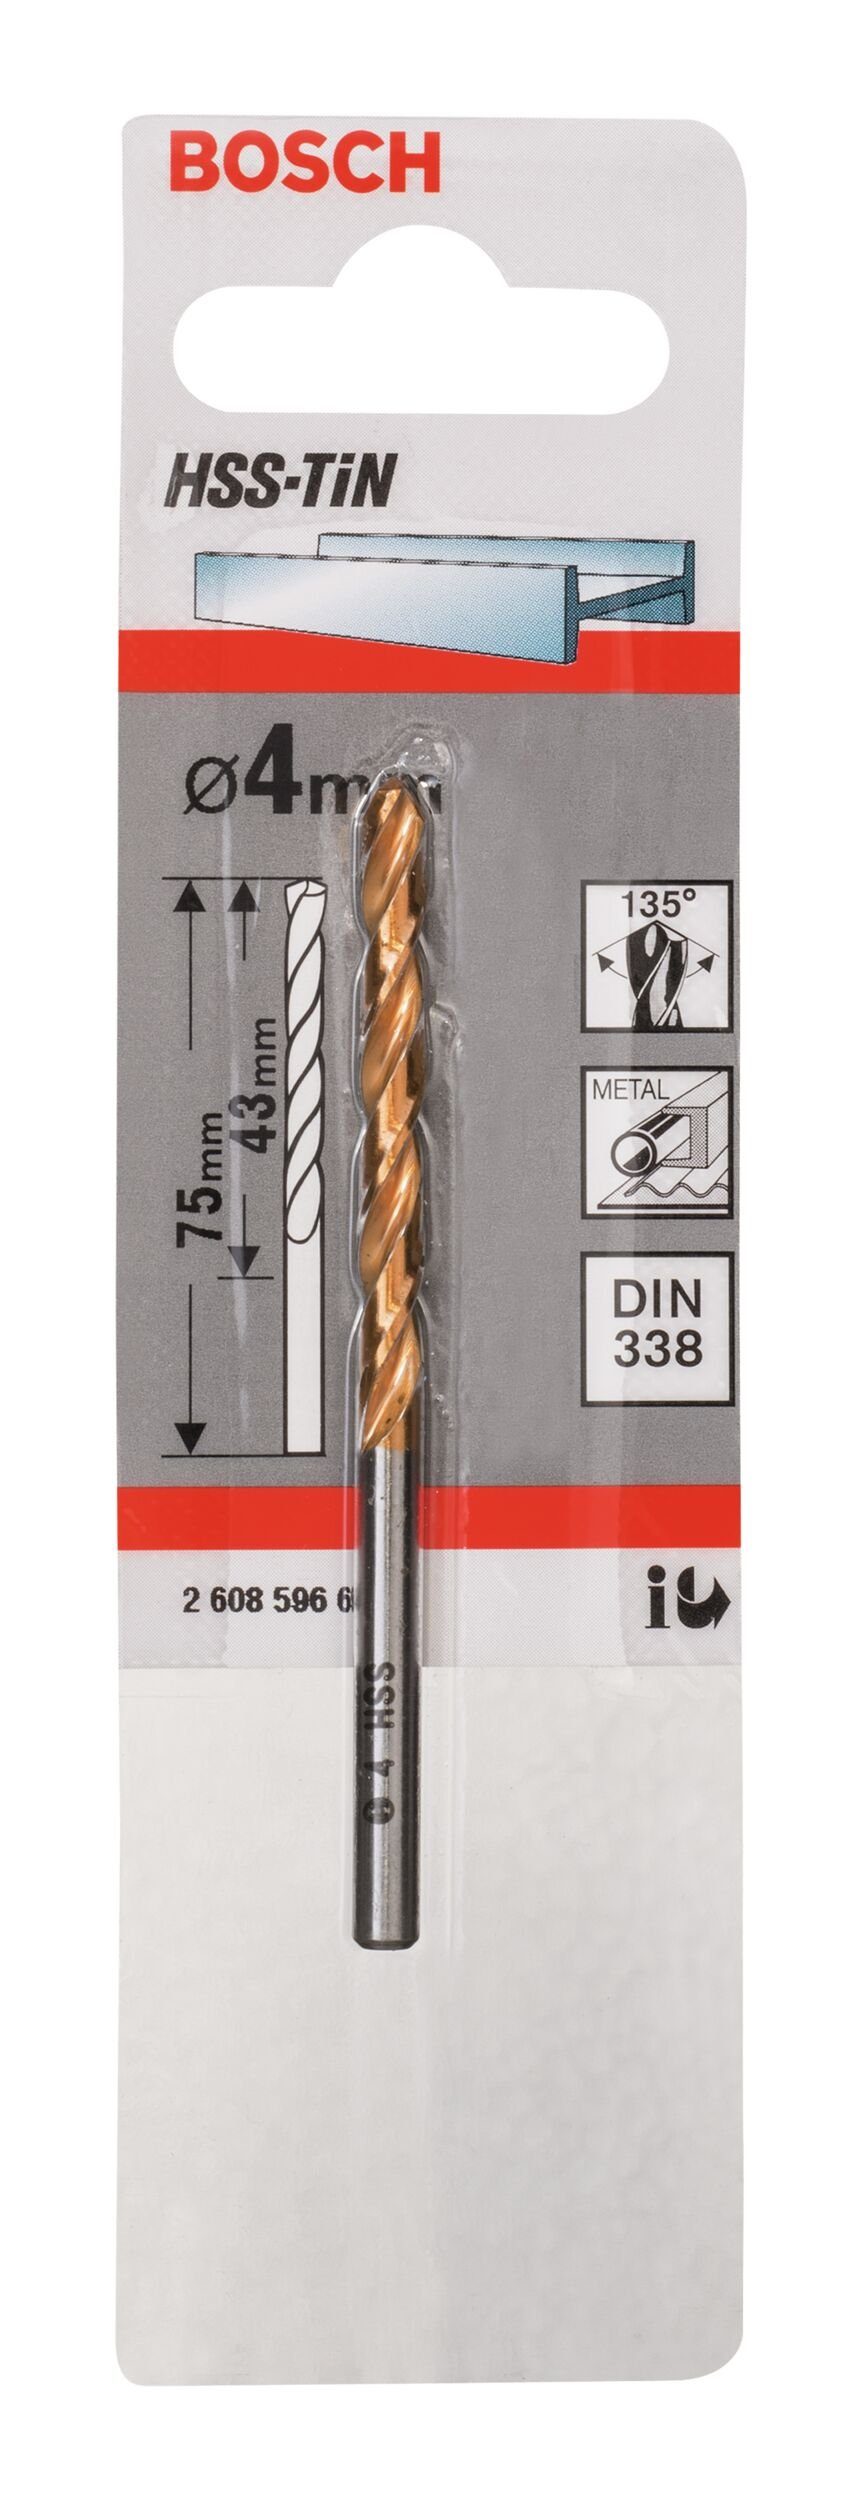 1er-Pack HSS-TiN BOSCH (DIN mm - 75 338) Metallbohrer, 43 x 4 x -